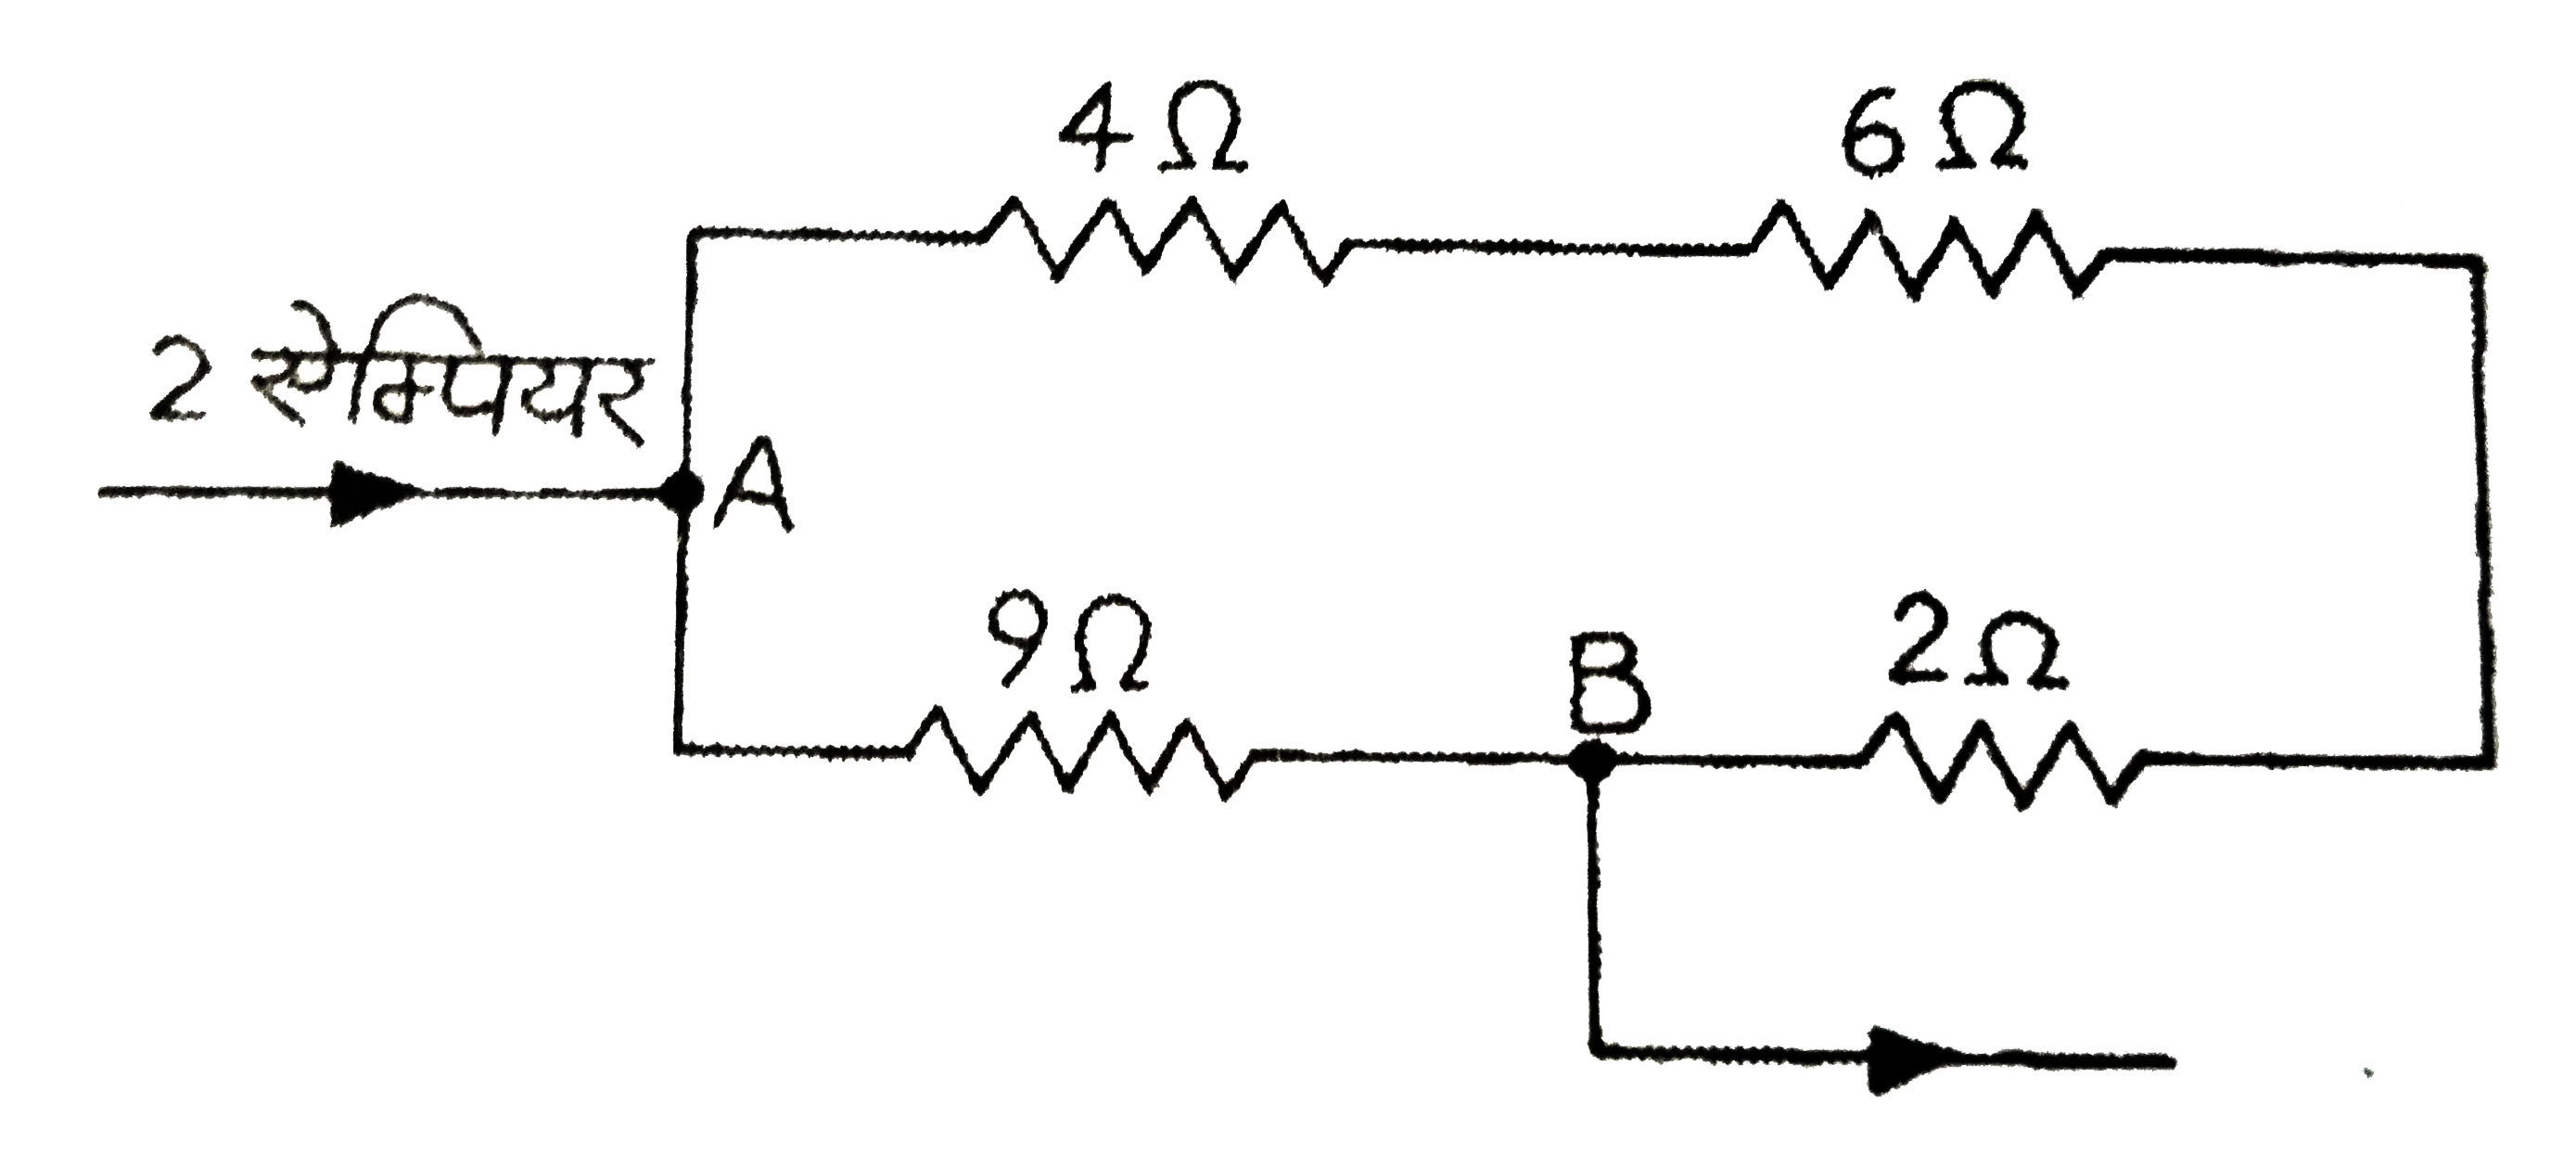 निम्न परिपथ में चार प्रतिरोधों का संयोजन दिखाया गया है । ज्ञात  कीजिए  : (i) बिन्दुओ A    व B  के बीच  तुल्य - प्रतिरोध  , (ii) A   वB के बीच  विभवांतर  तथा  (iii) विभिन्न  प्रतिरोधों में धाराएँ।